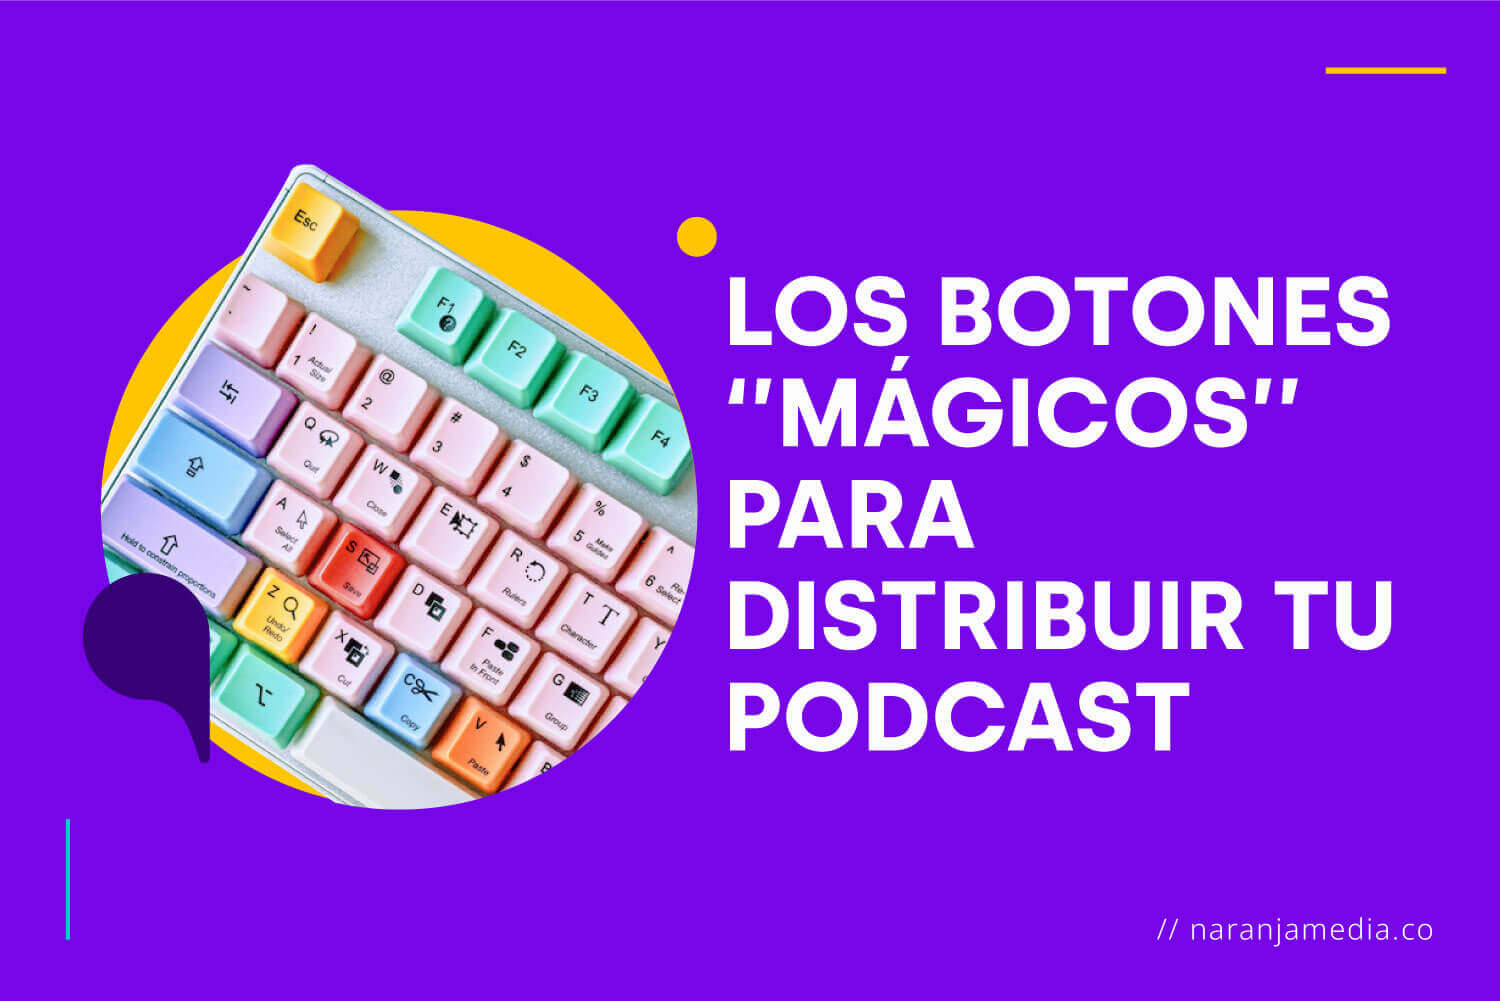 Los botones magicos para distribuir tu podcast